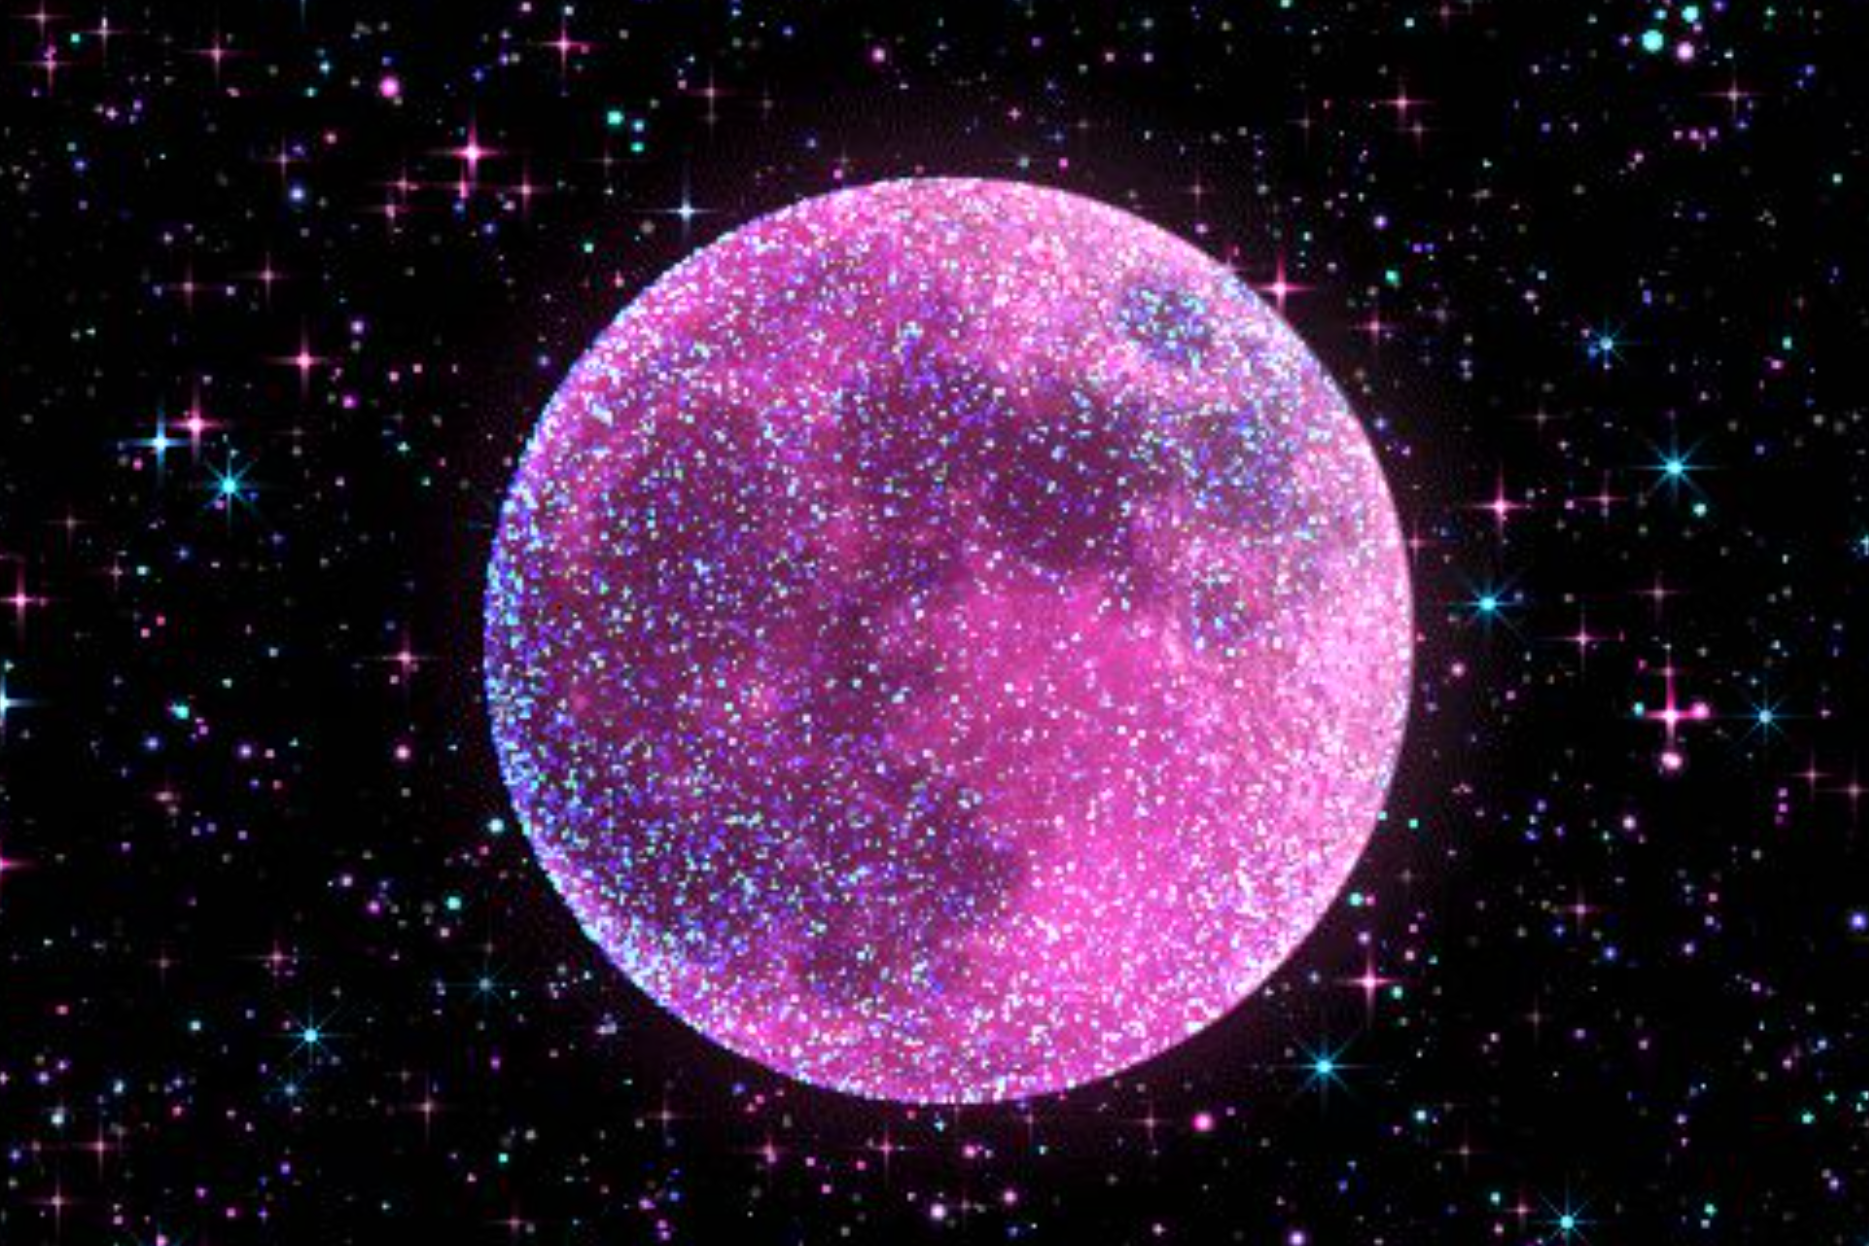 粉色少女星球格利泽504b是如何形成的?距离地球仅57光年!